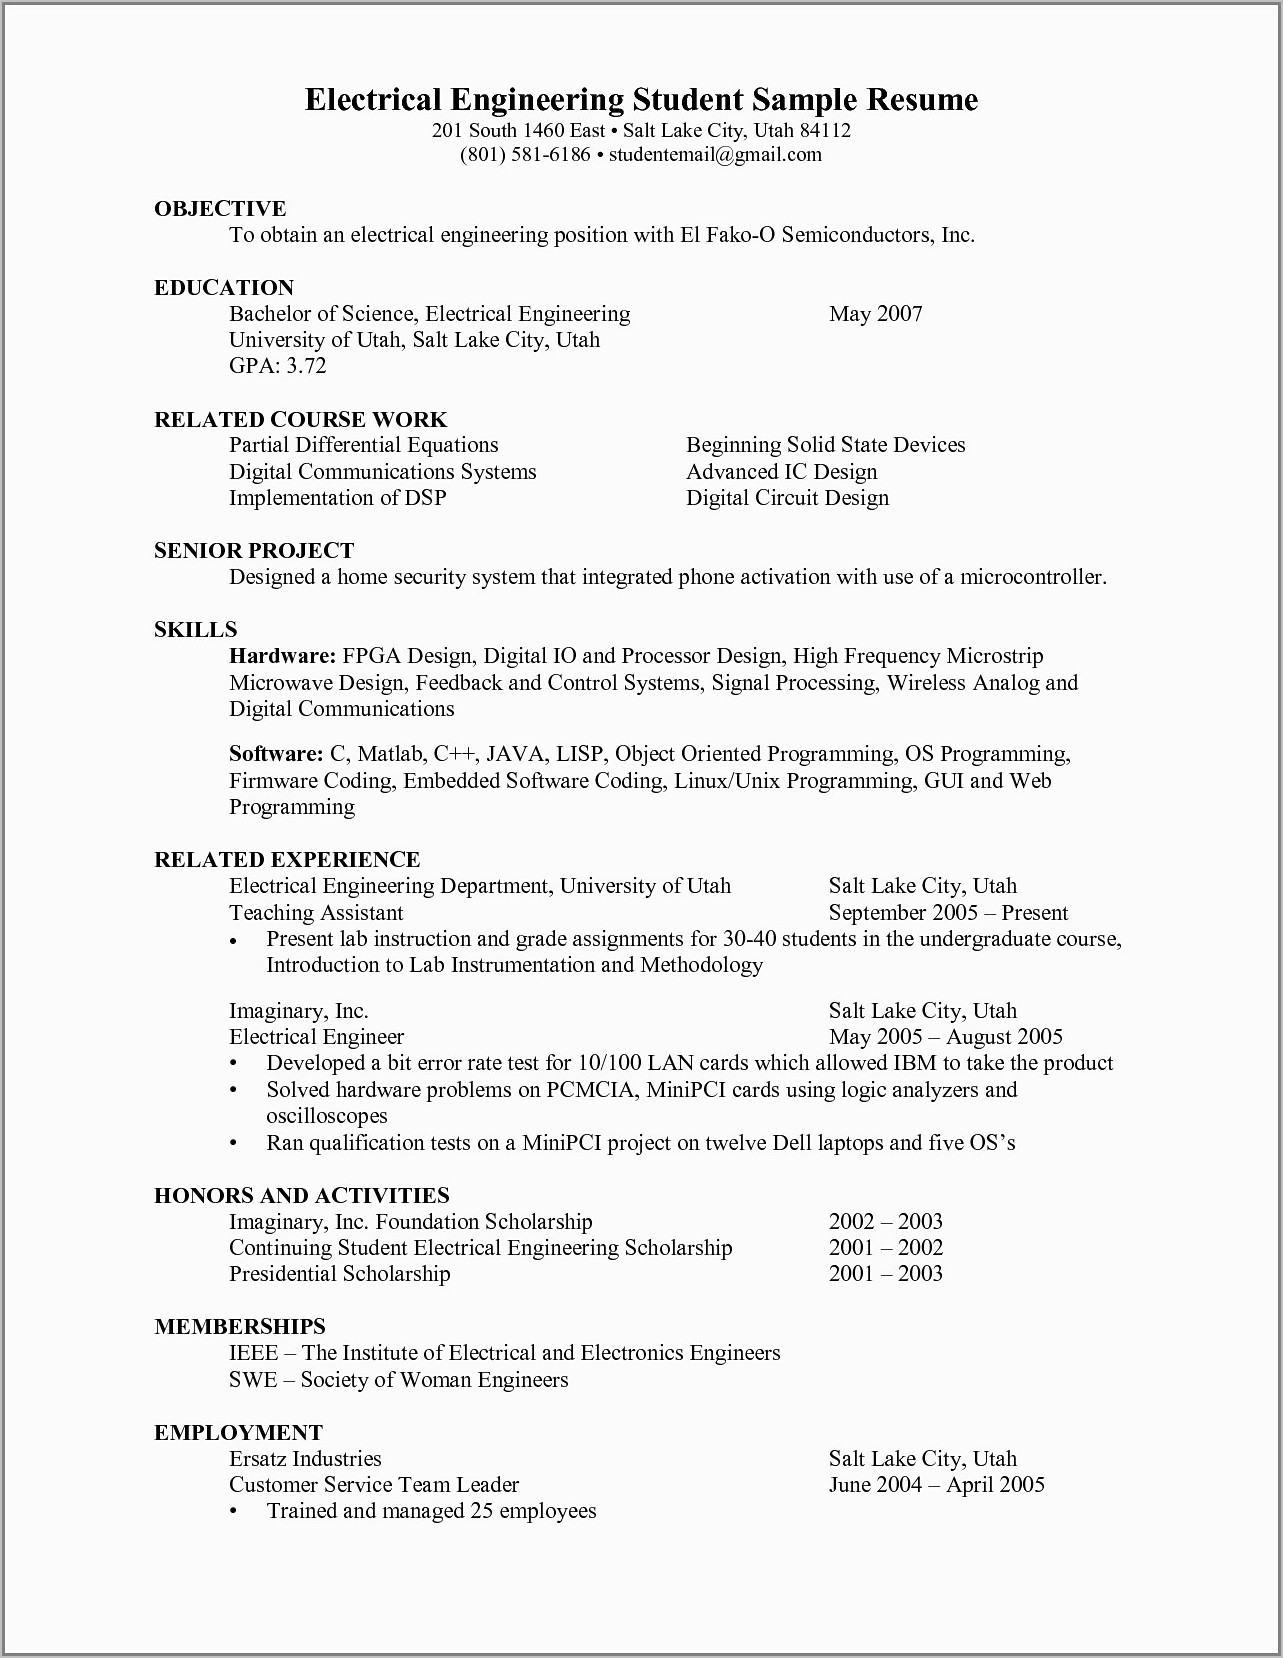 Resume Programs For Mac